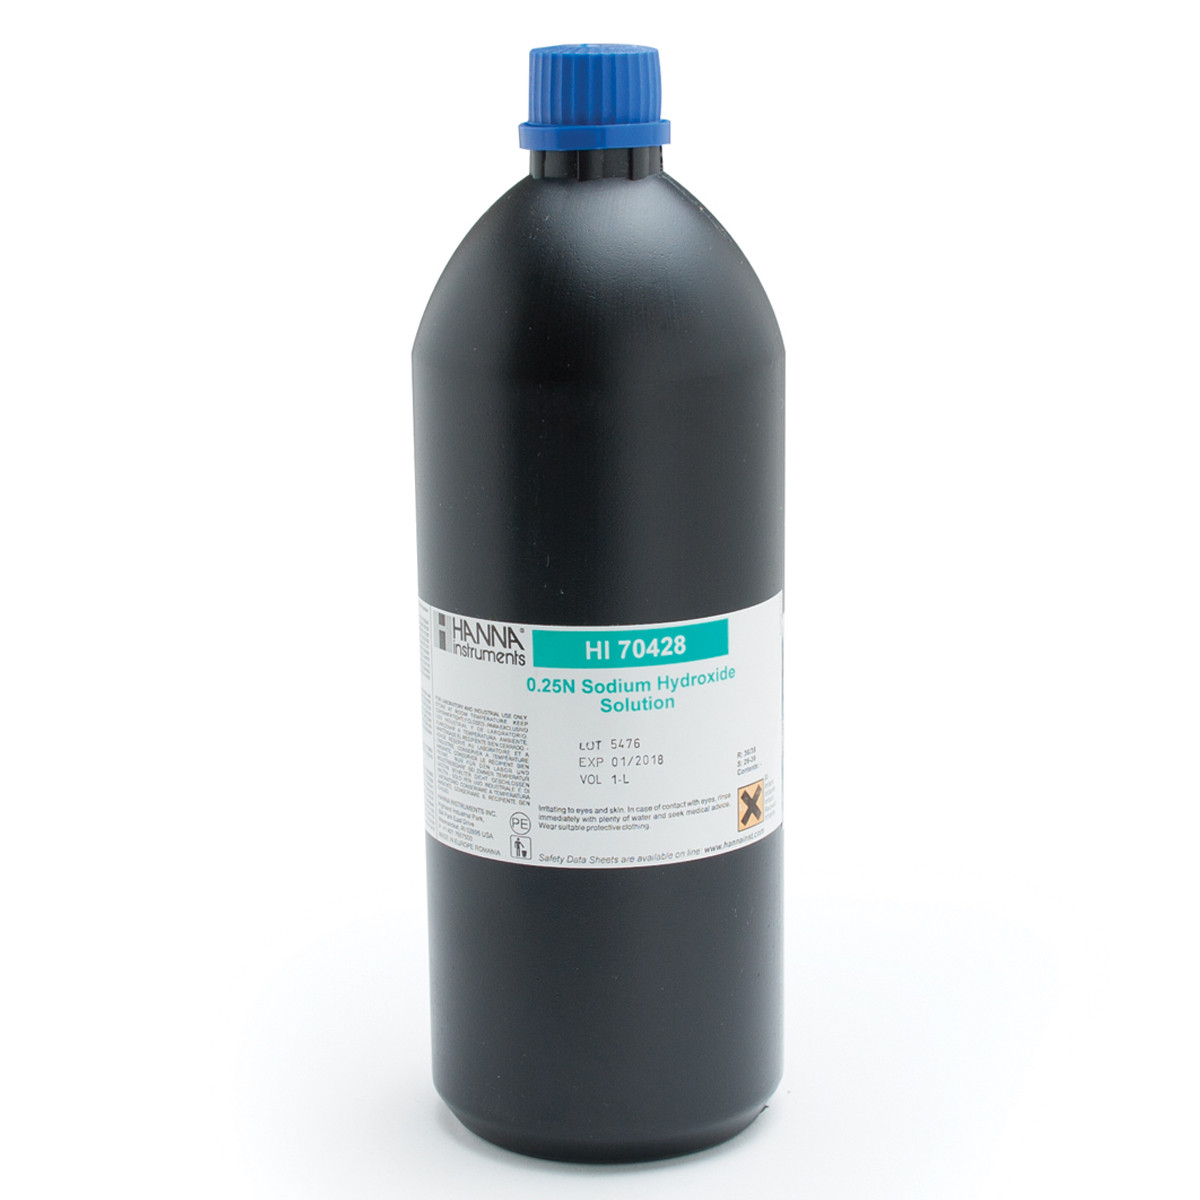 Sodium Hydroxide Solution 0.25N, 1L